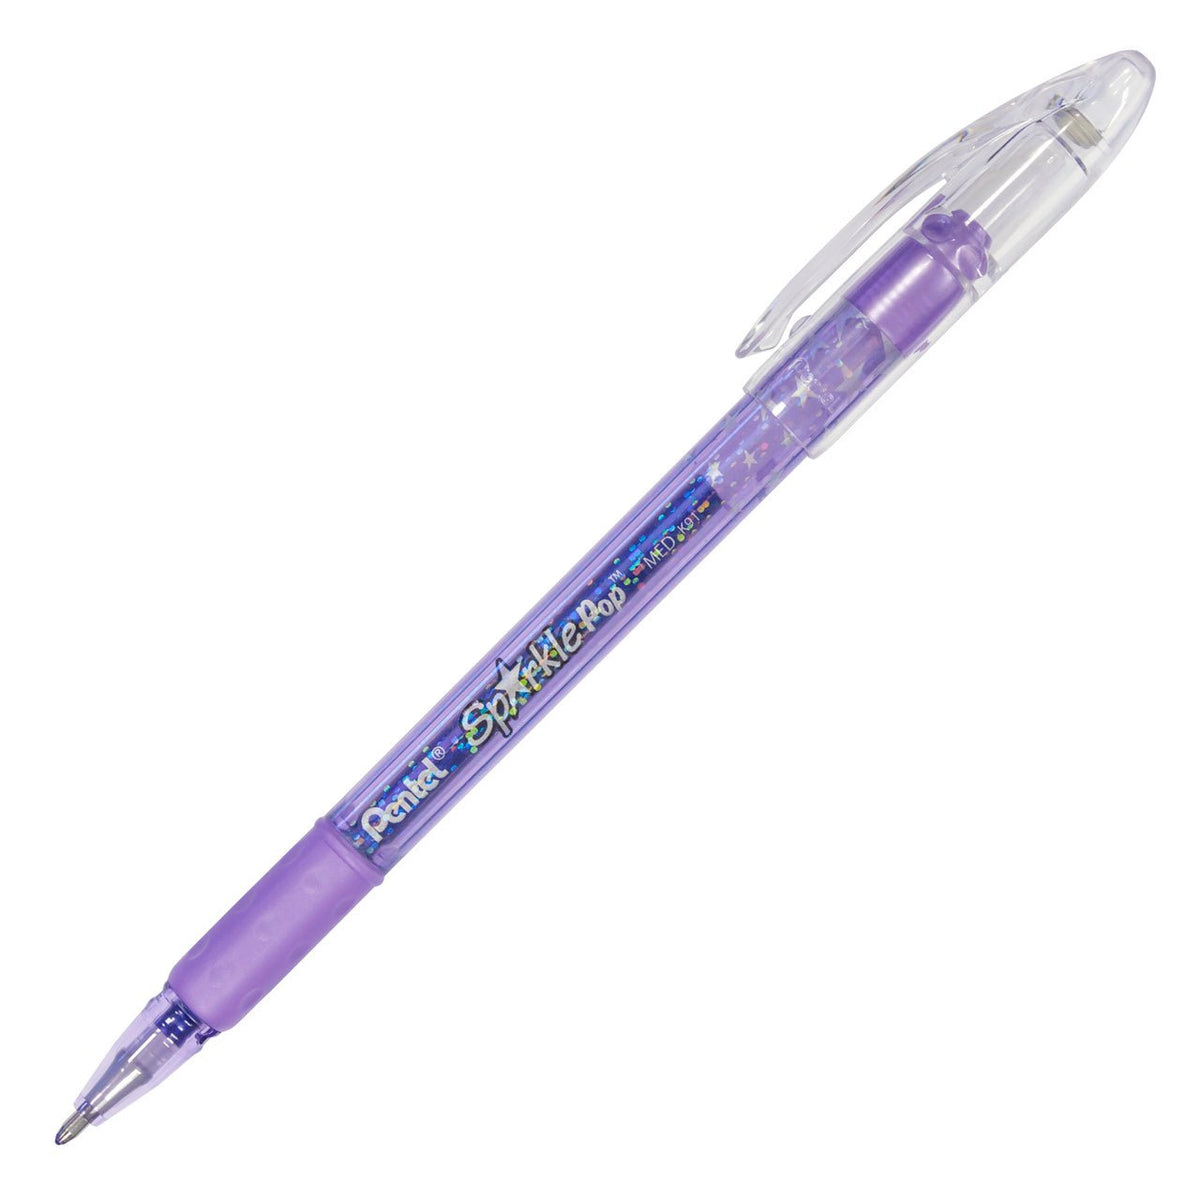 Pentel Sparkle Pop Metallic Gel Pen, (1.0mm) Bold Line, Violet-Blue Ink - merriartist.com